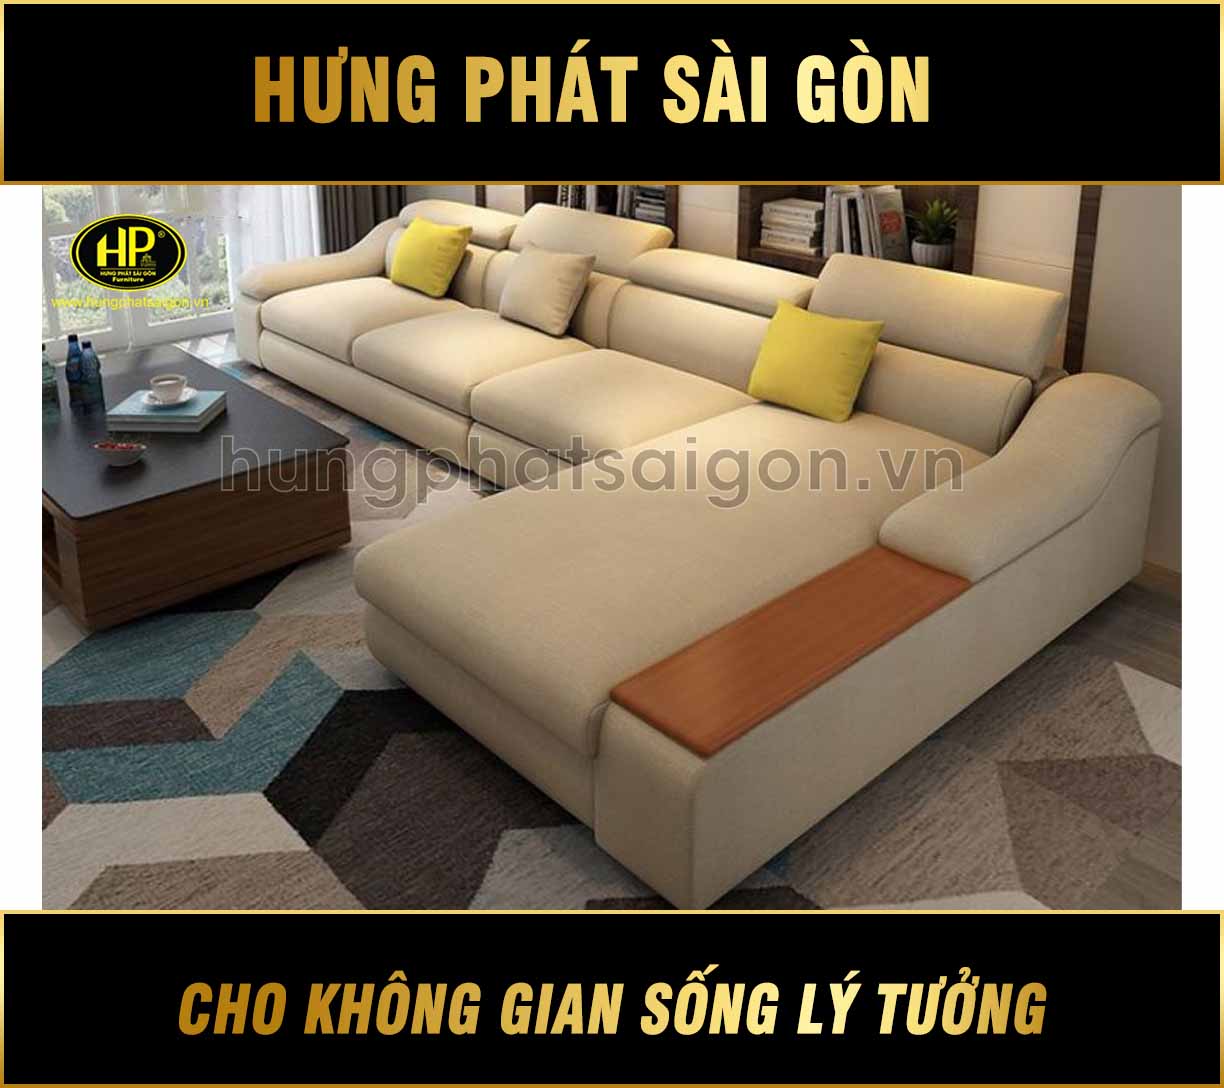 Sofa góc vải cao cấp H-266 - Hưng Phát Sài Gòn